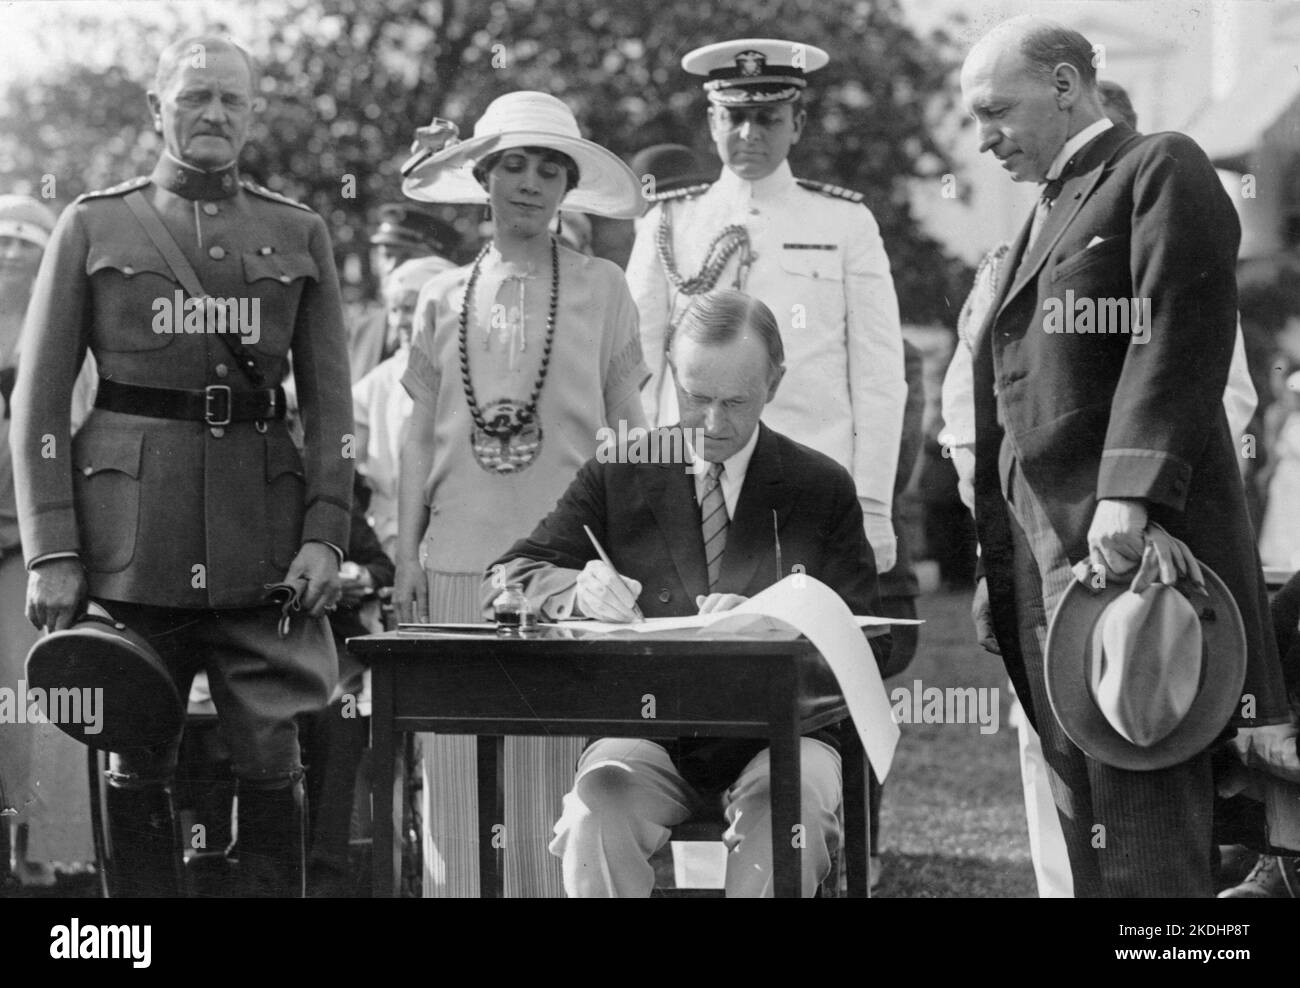 Il Presidente Coolidge firmando le fatture di appropriazione per il Veterans Bureau sul South Lawn durante la festa in giardino per i veterani feriti, 5 giugno 1924. Il generale John J. Pershing è sulla sinistra. L'uomo a destra, guardando sopra, sembra essere il direttore del Veterans Bureau Frank T. Hines. Foto Stock